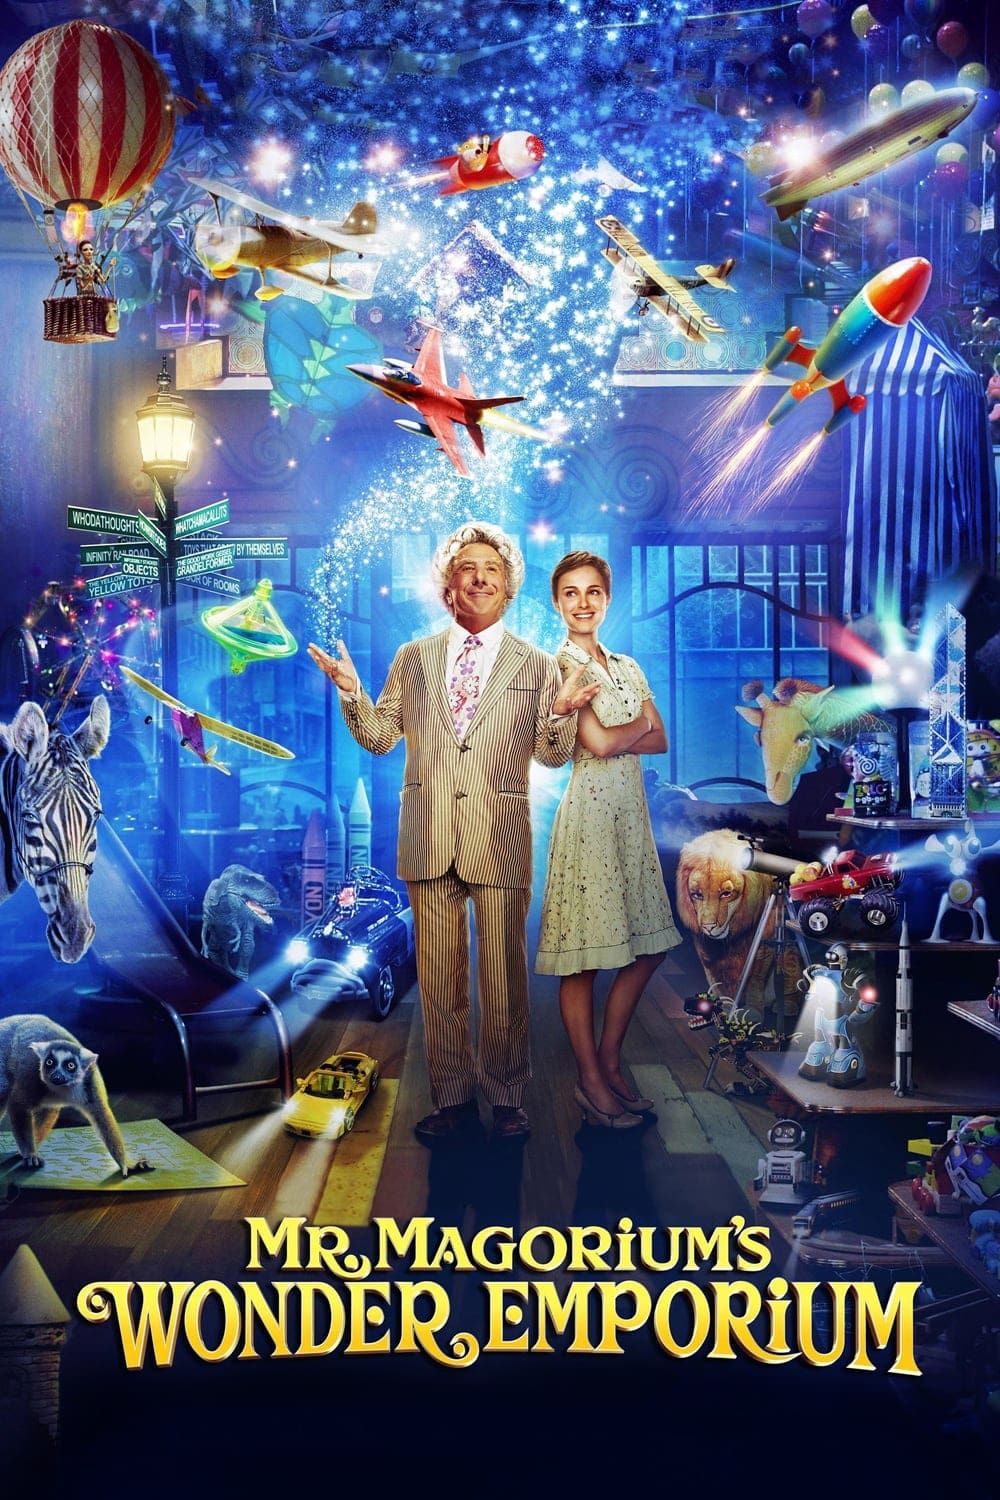 Mr. Magoriums Wunderladen